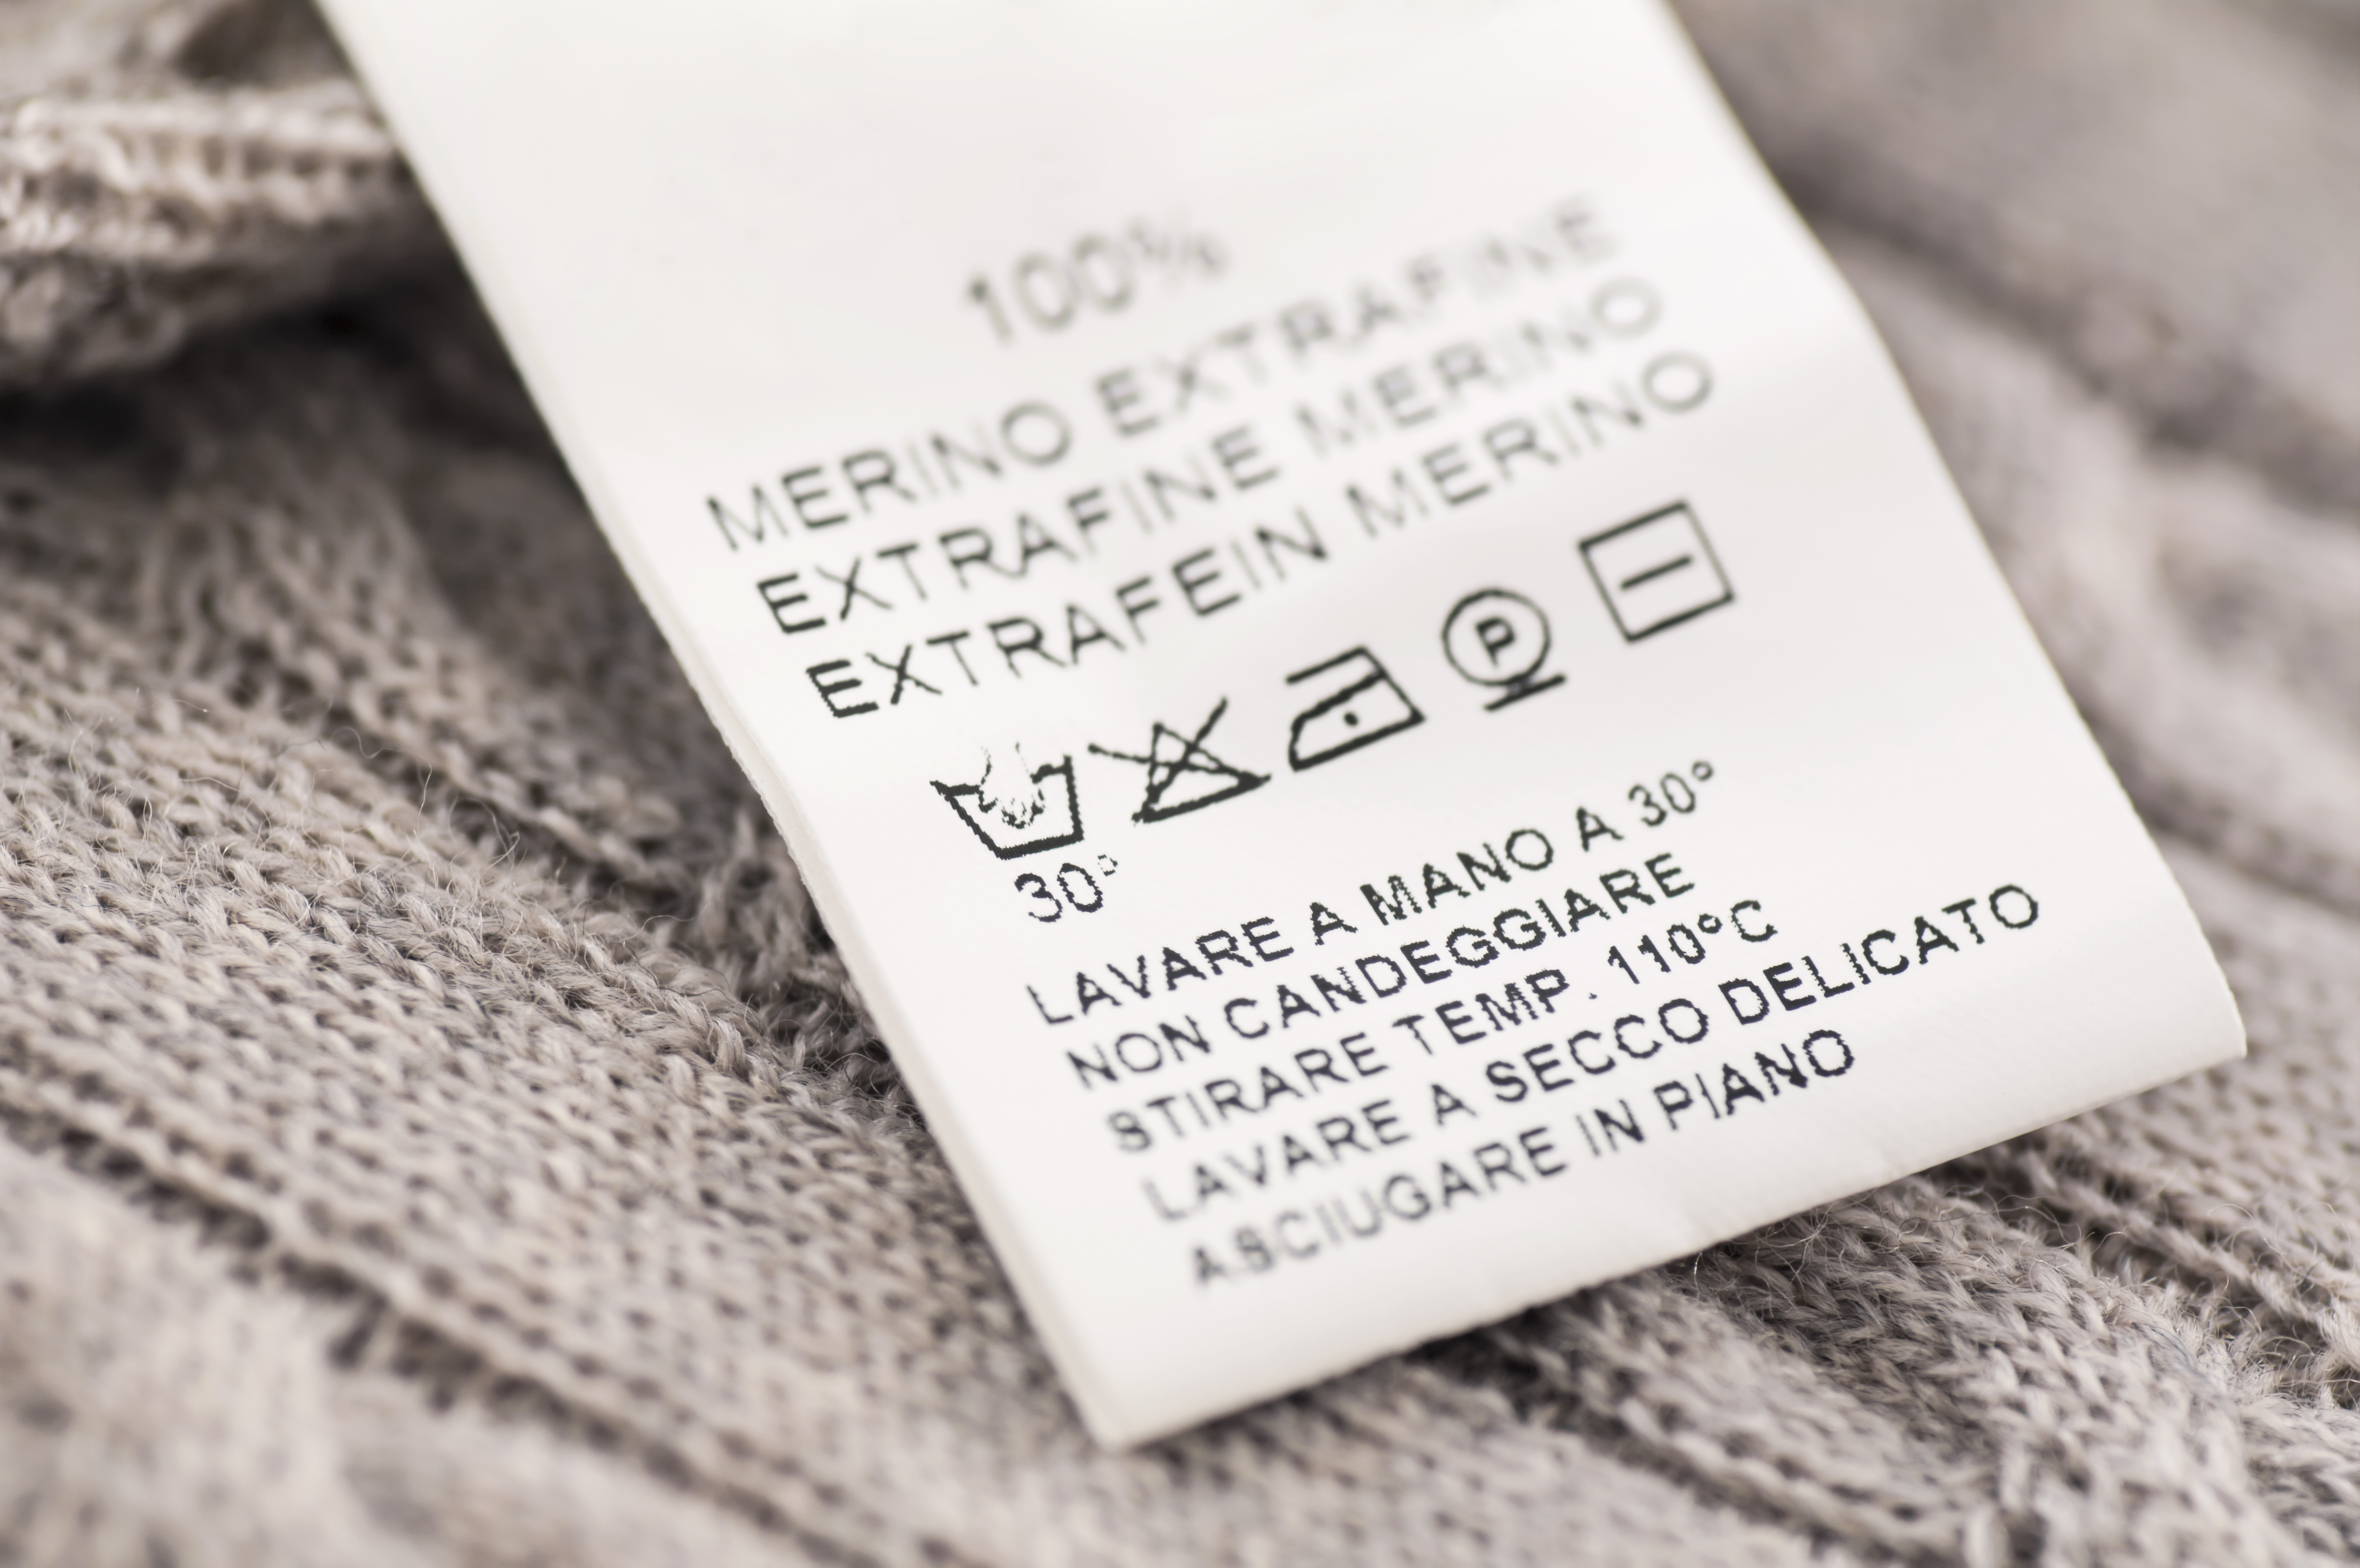 Símbolos de lavado en etiqueta de la ropa